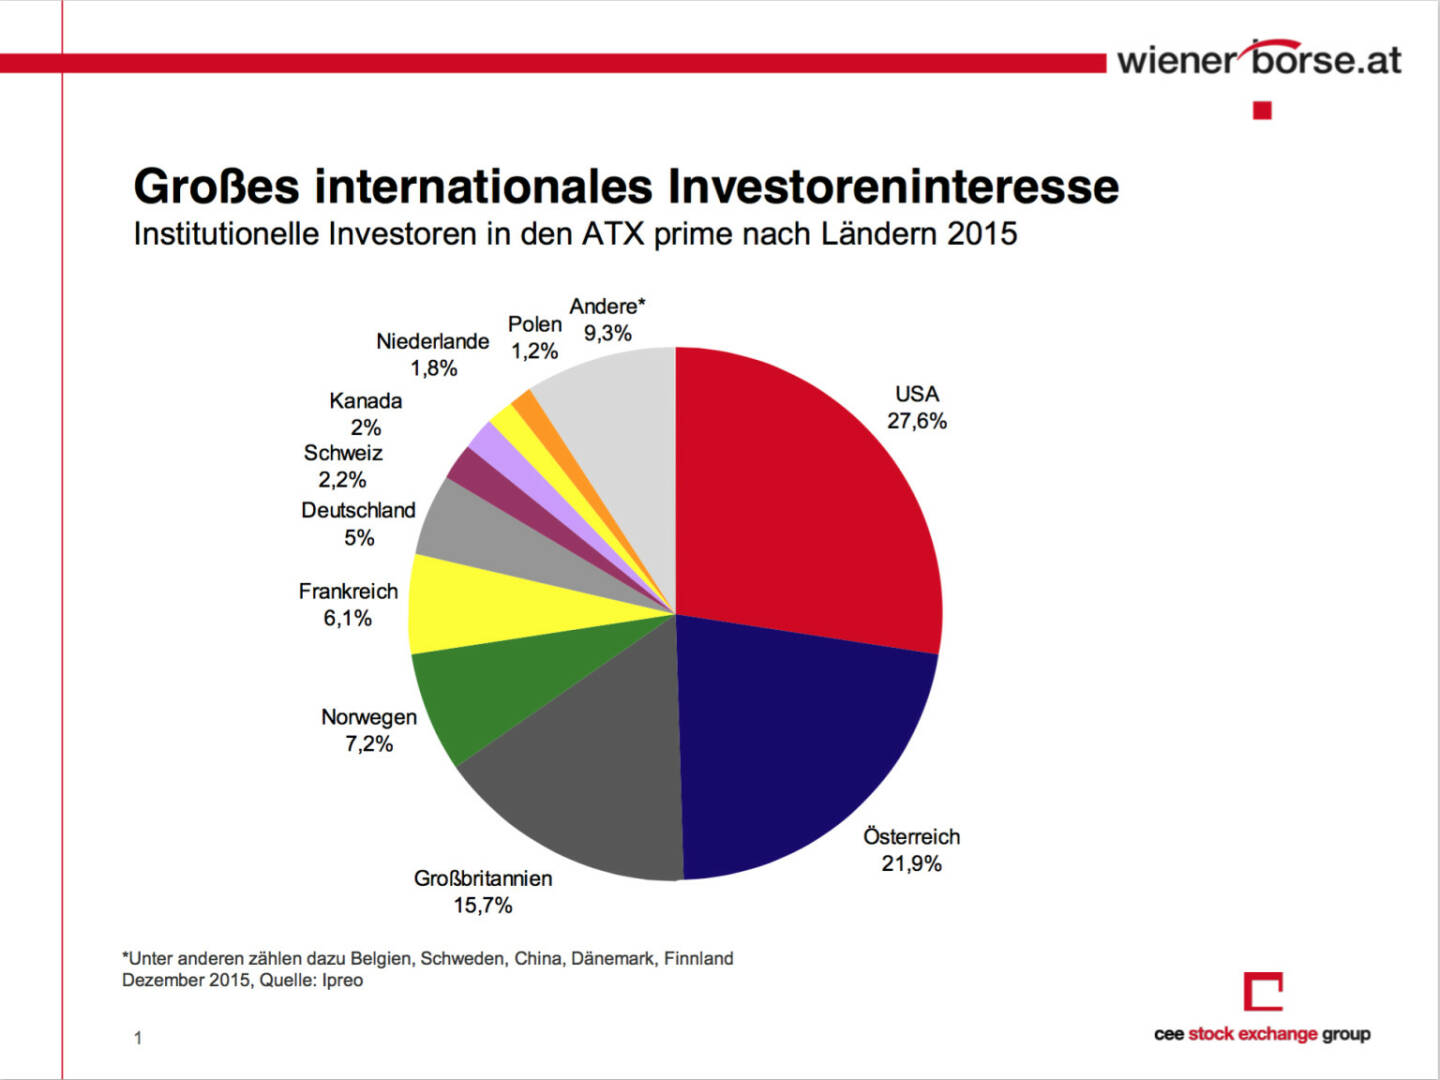 Grosses internationales Investoreninteresse für die Wiener Börse (c) Wiener Börse